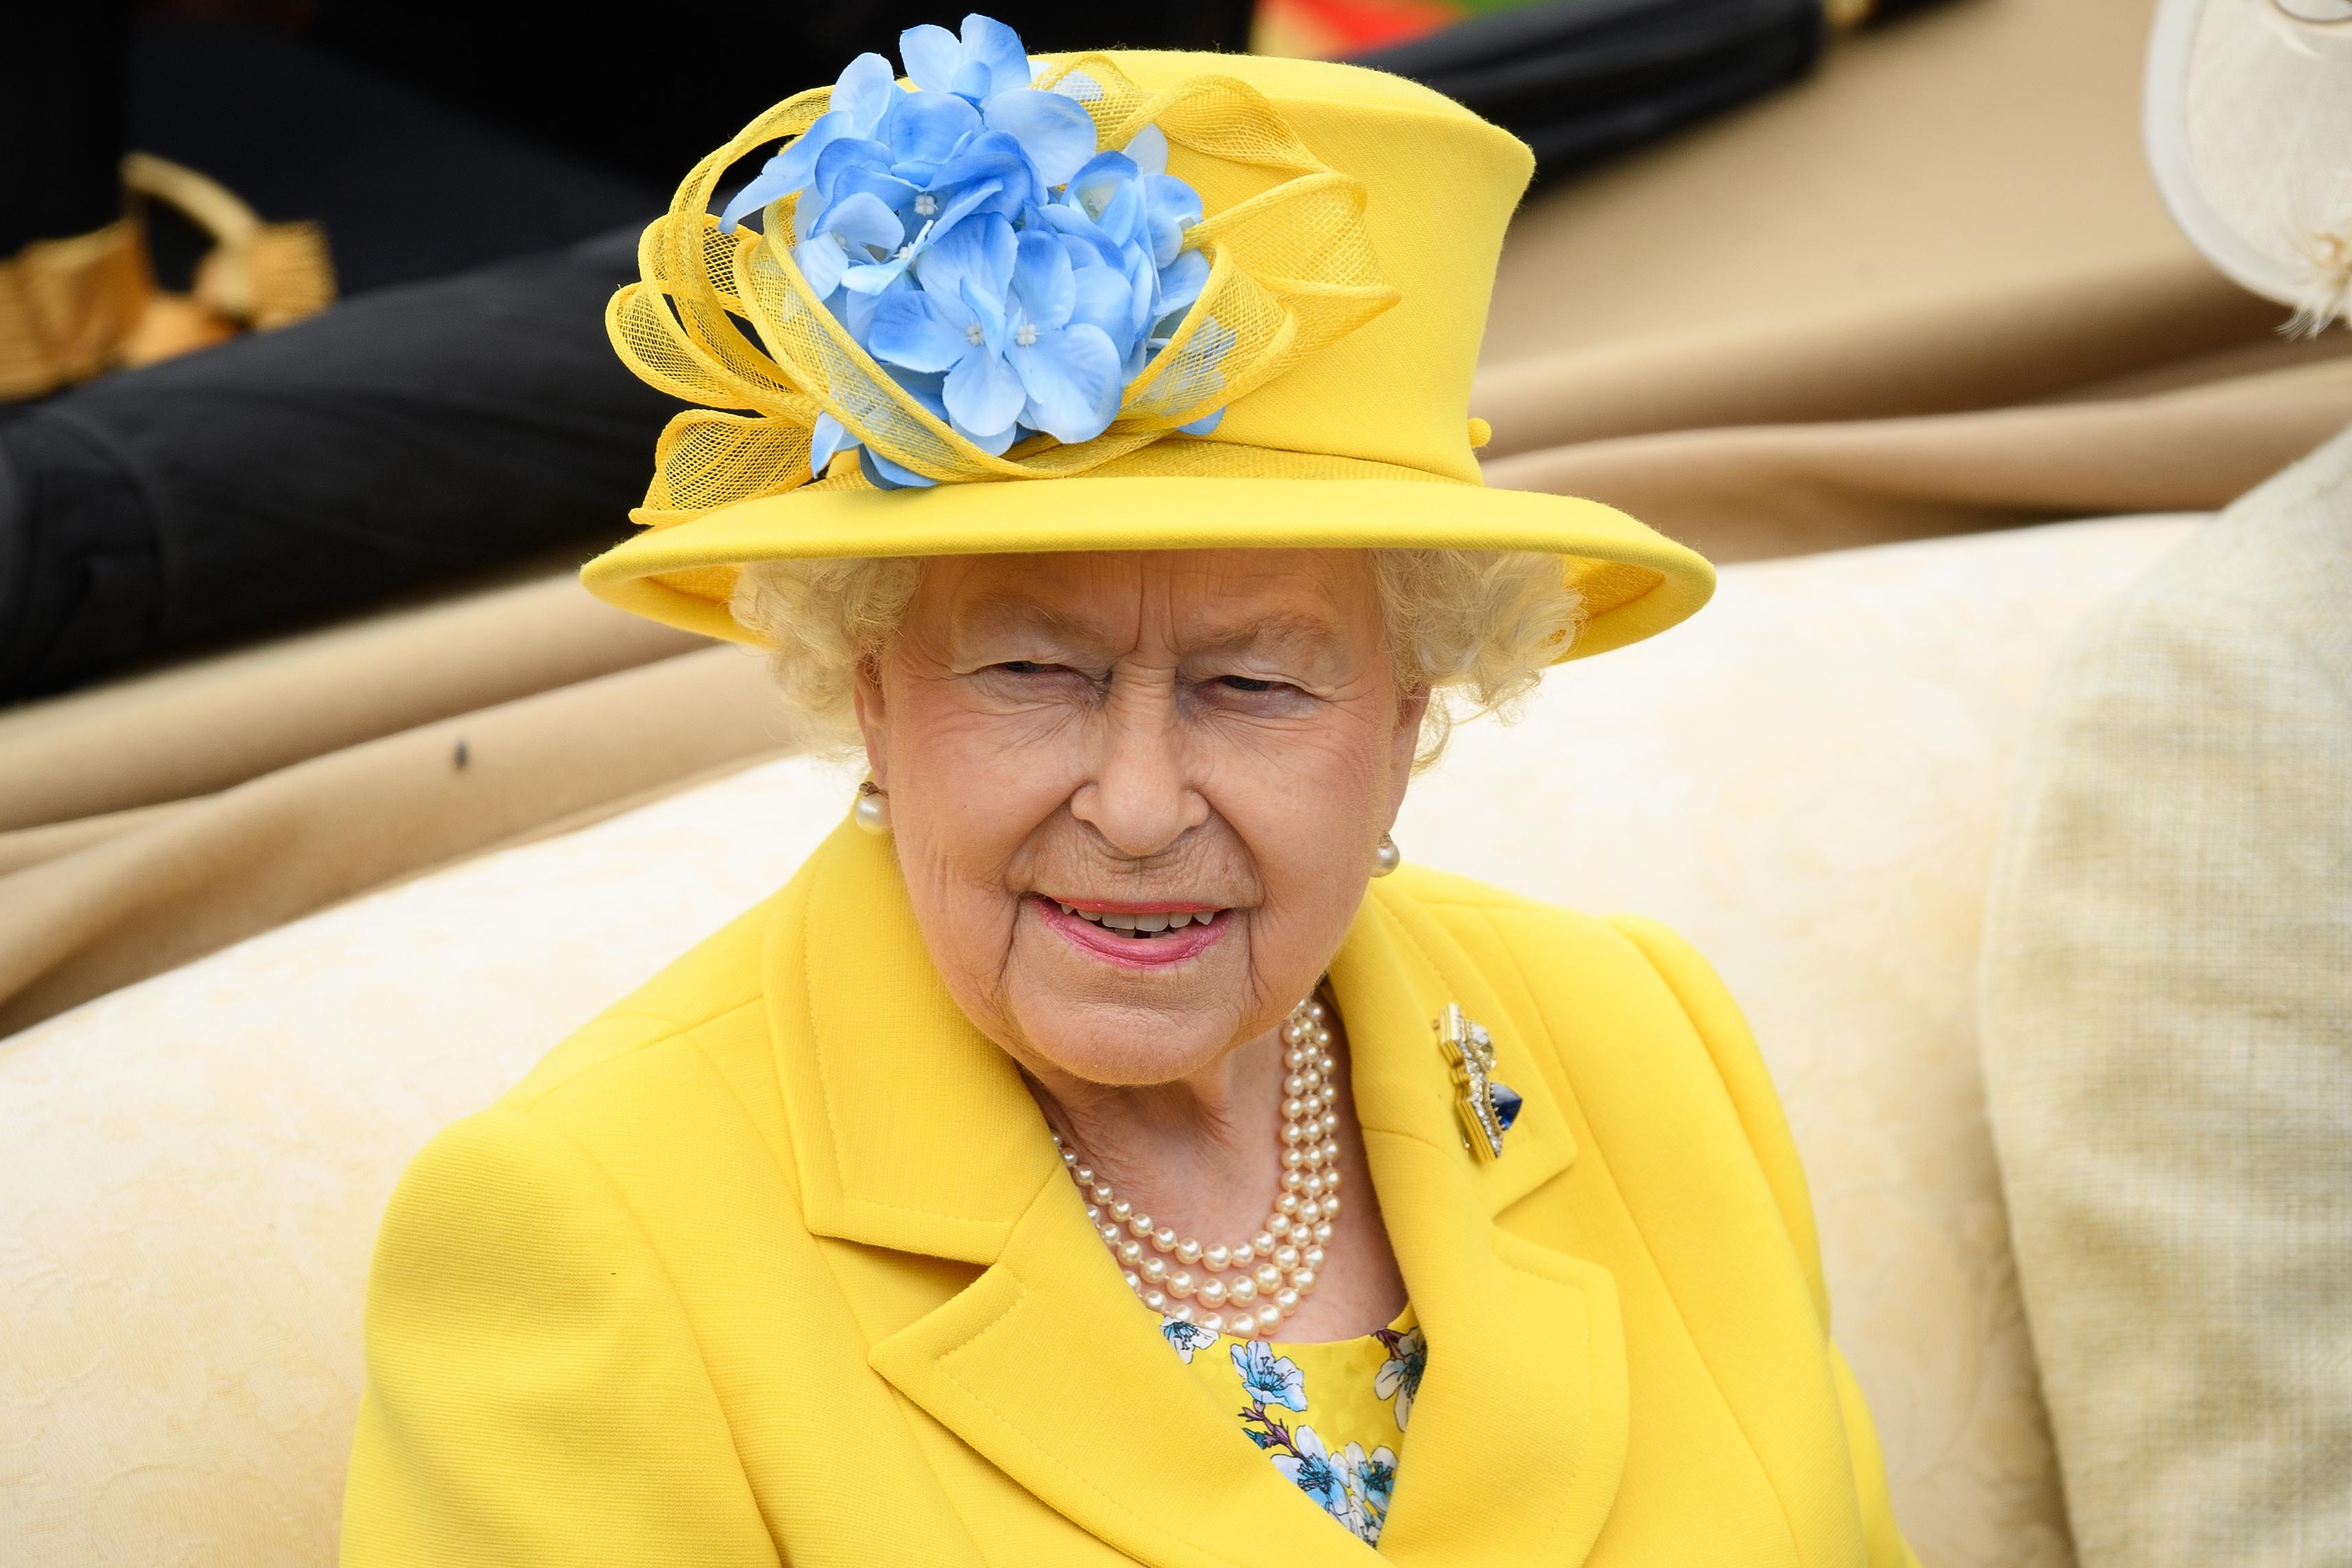 Kraljica Elizabeta nakon pozitivnog testa na koronu odgodila sve virtualne obaveze